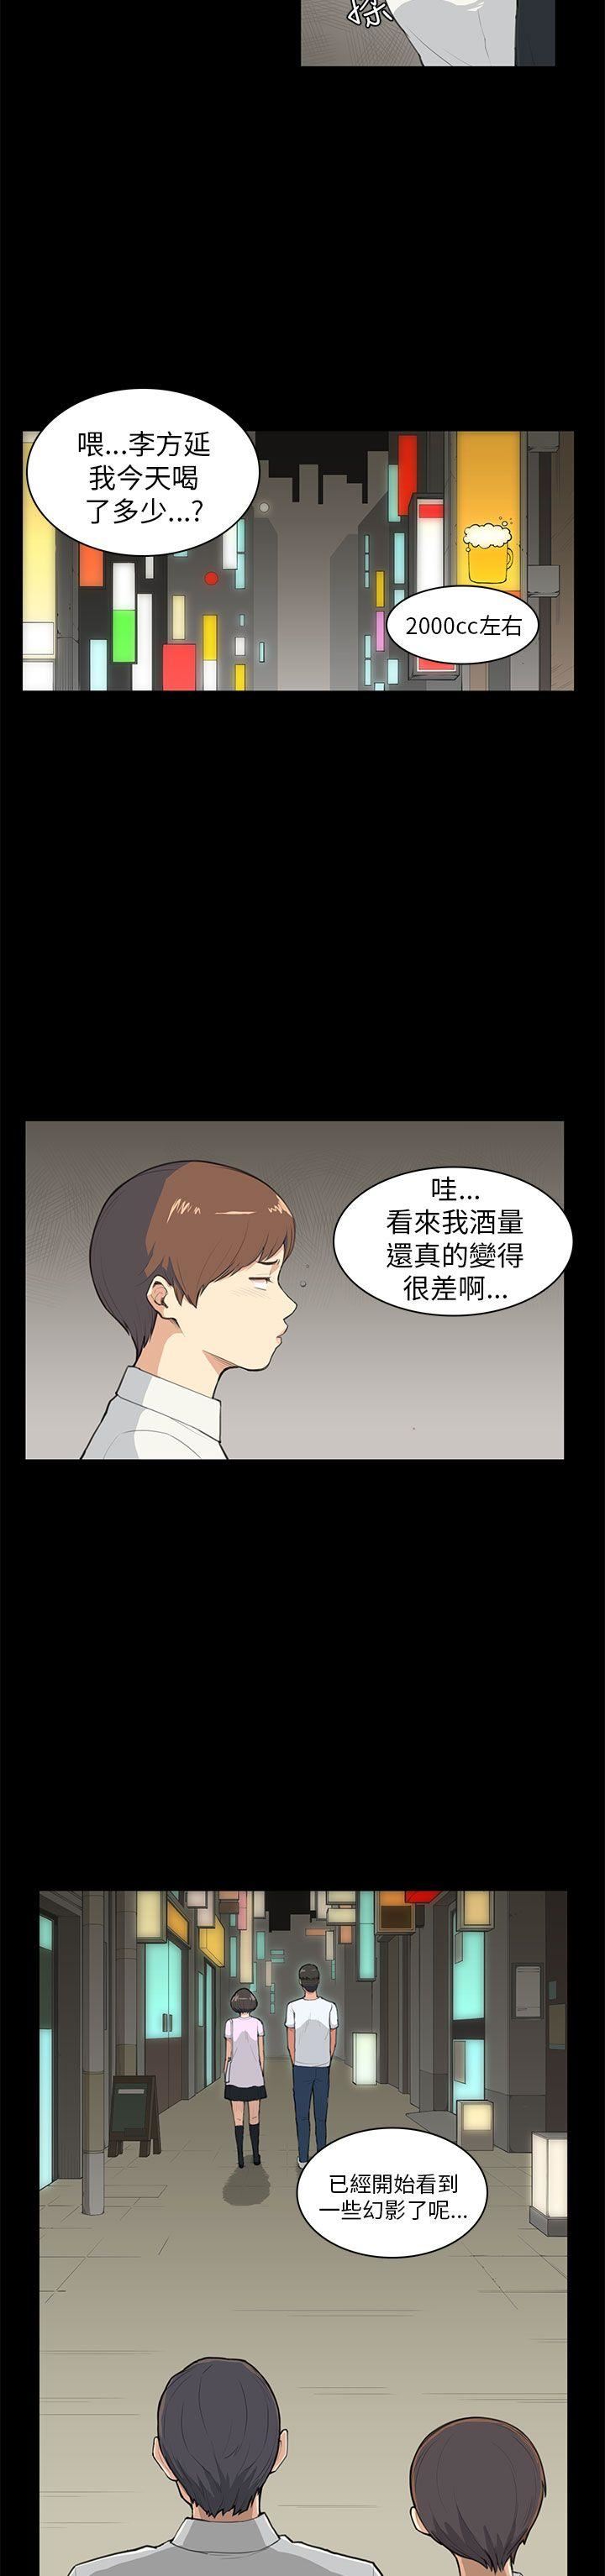 韩国污漫画 斯德哥爾摩癥候群 第8话 12